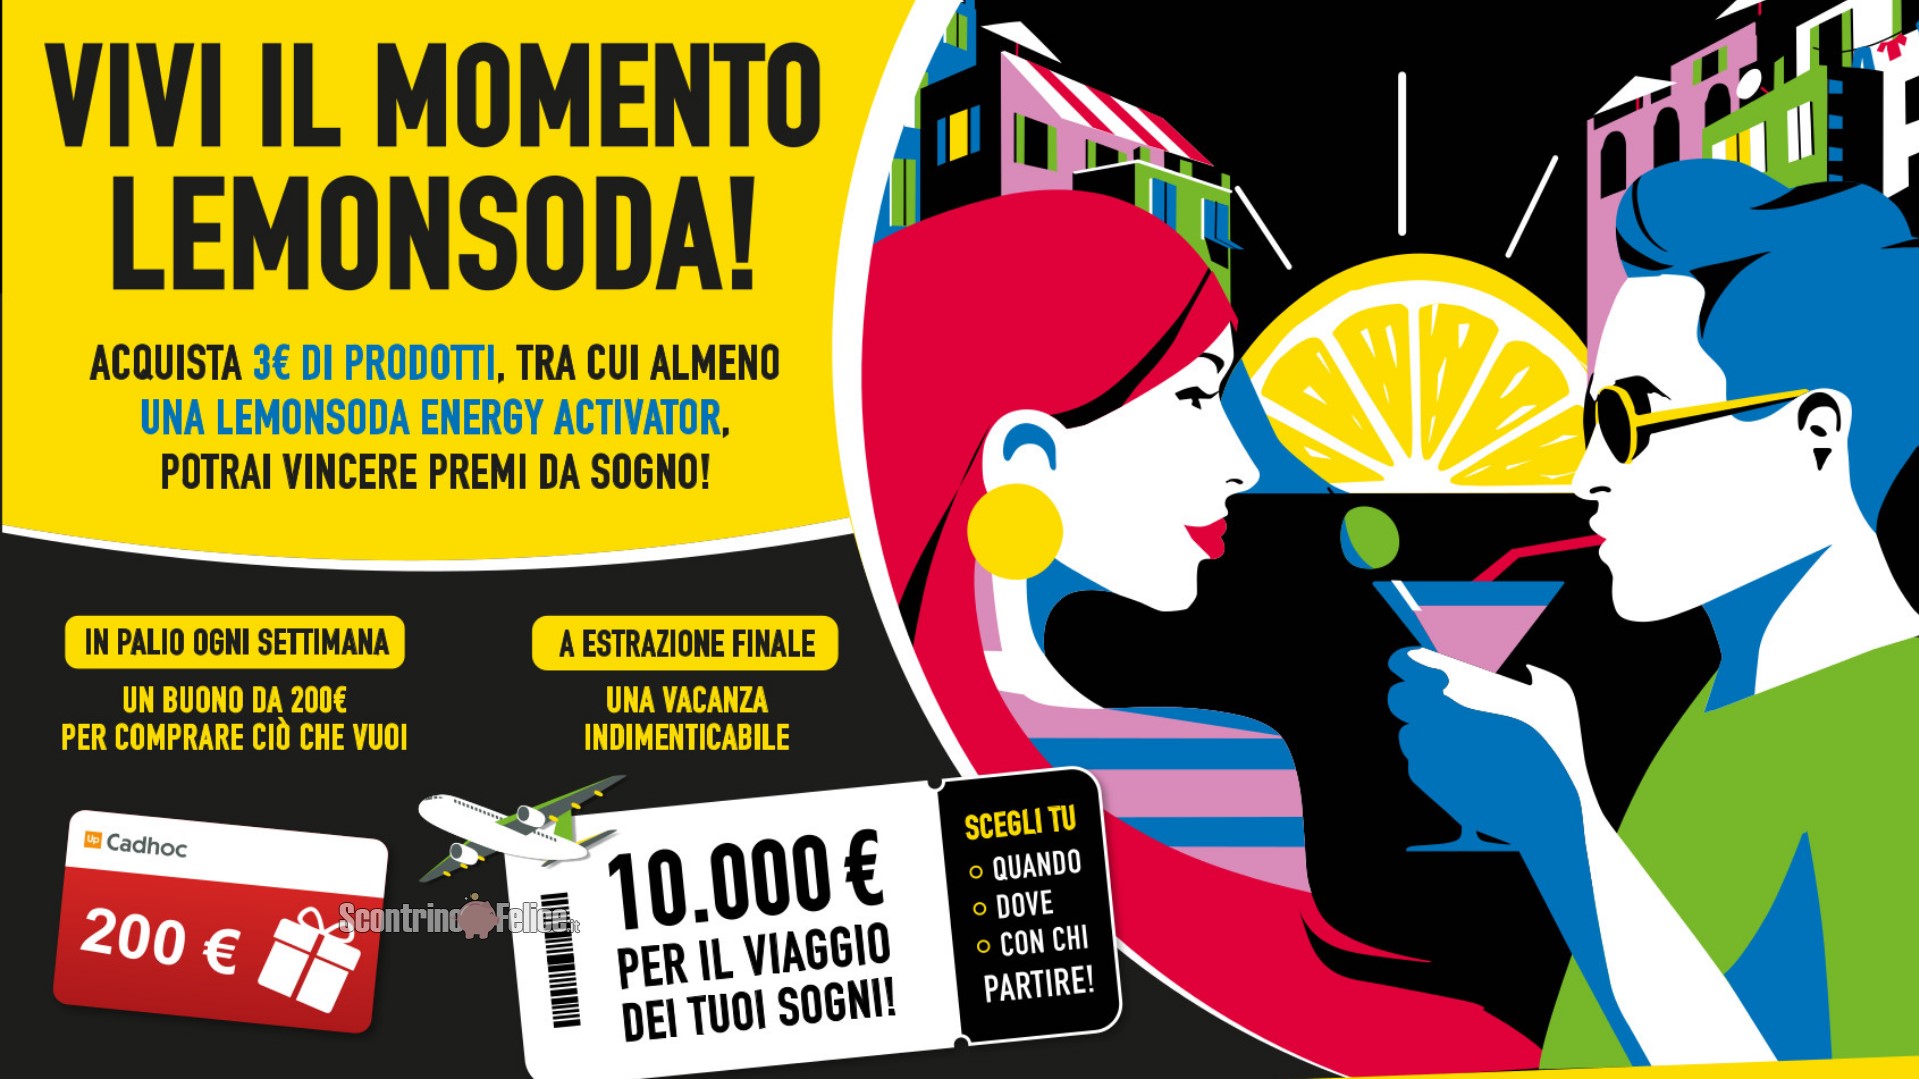 Concorso Vivi il momento Lemonsoda: vinci buoni Cadhoc da 200 euro e un viaggio da 10.000 euro!